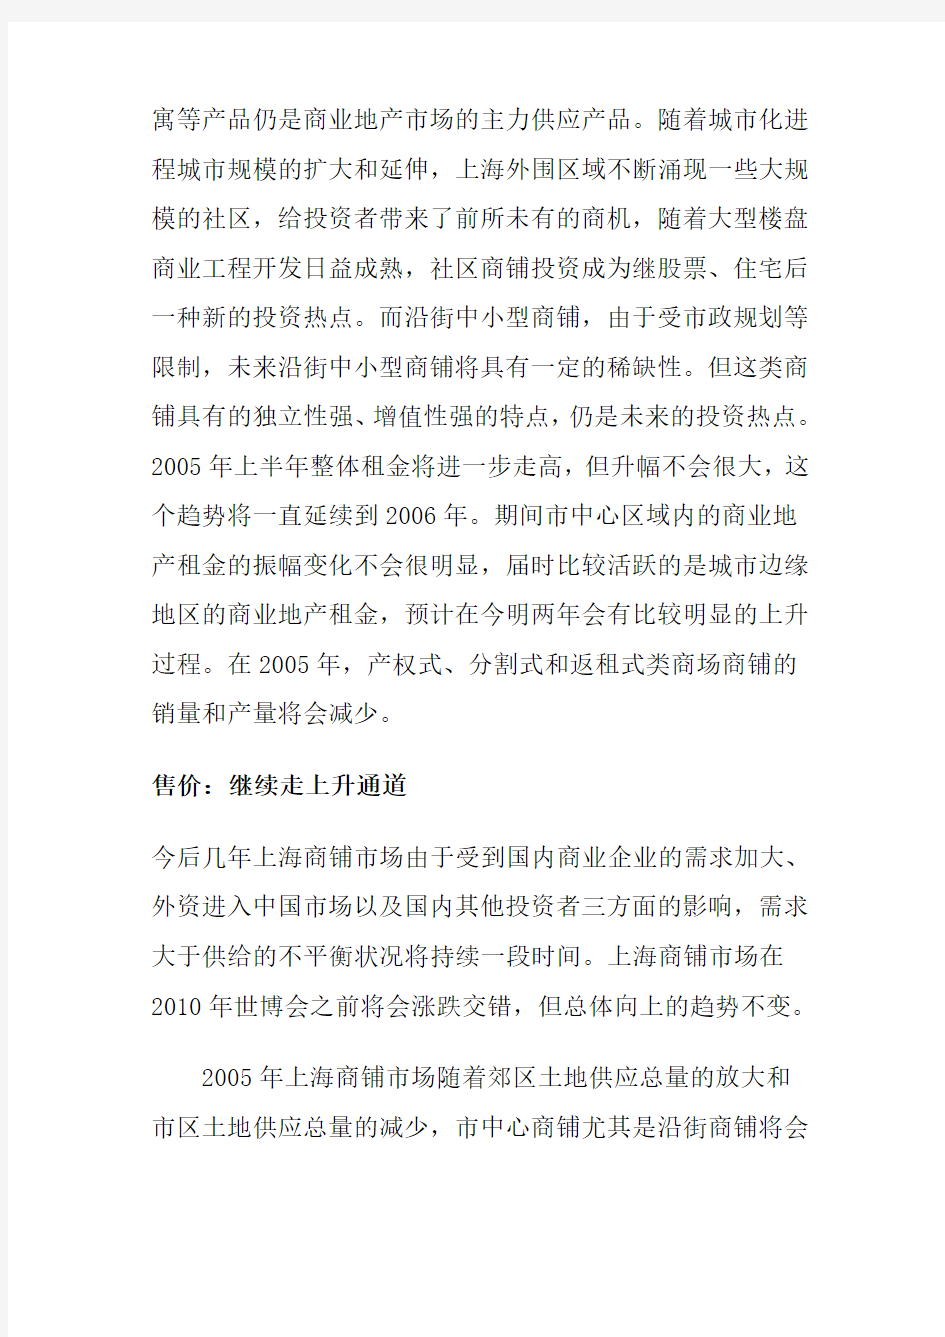 上海商铺租金分析报告书